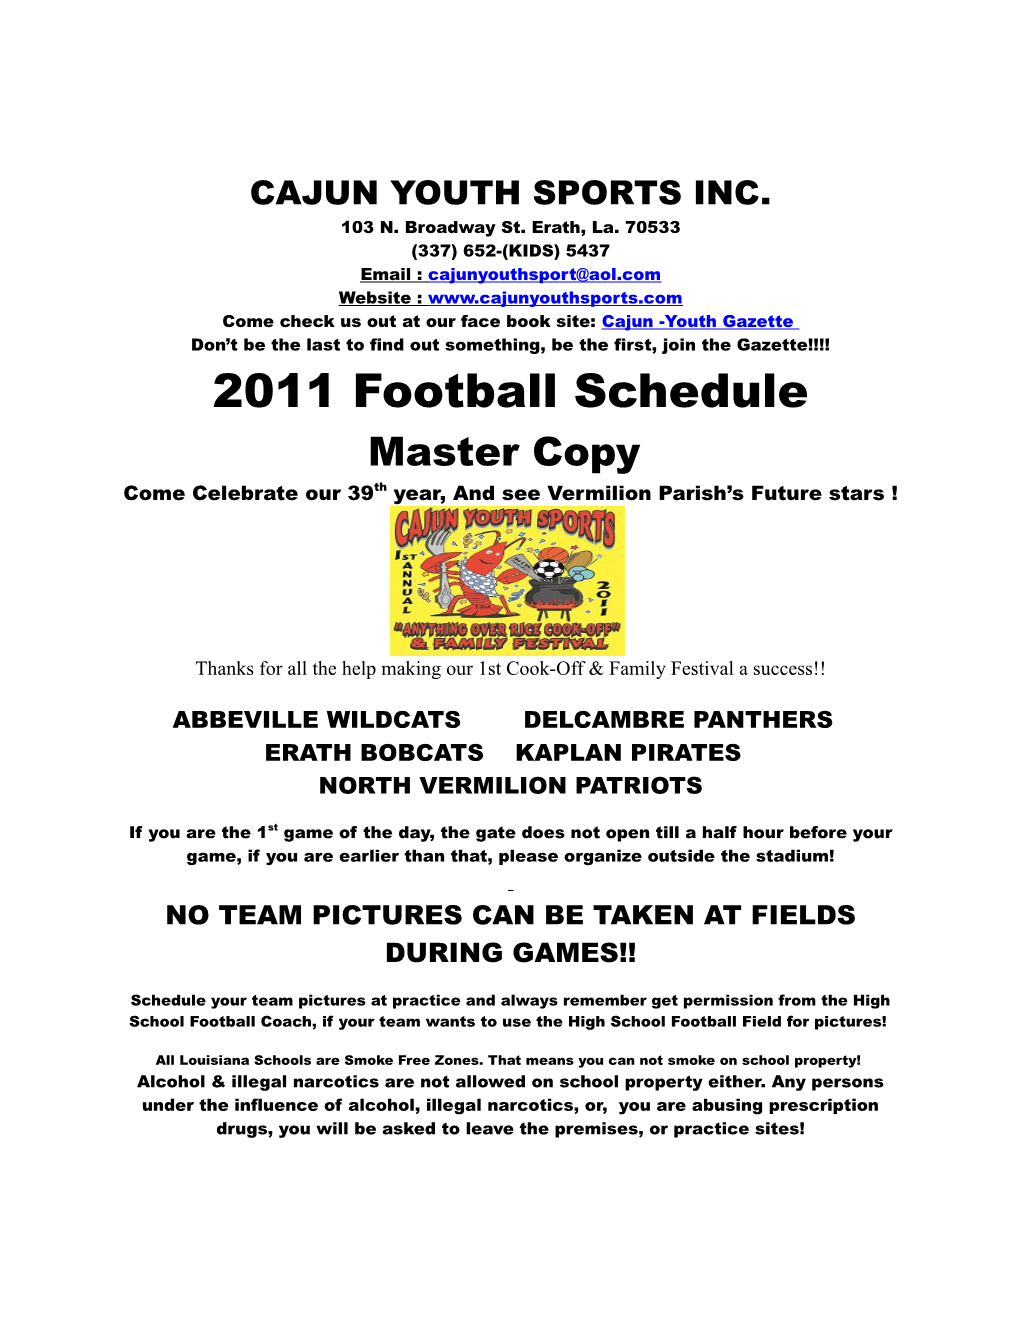 Cajun Youth Sports Inc